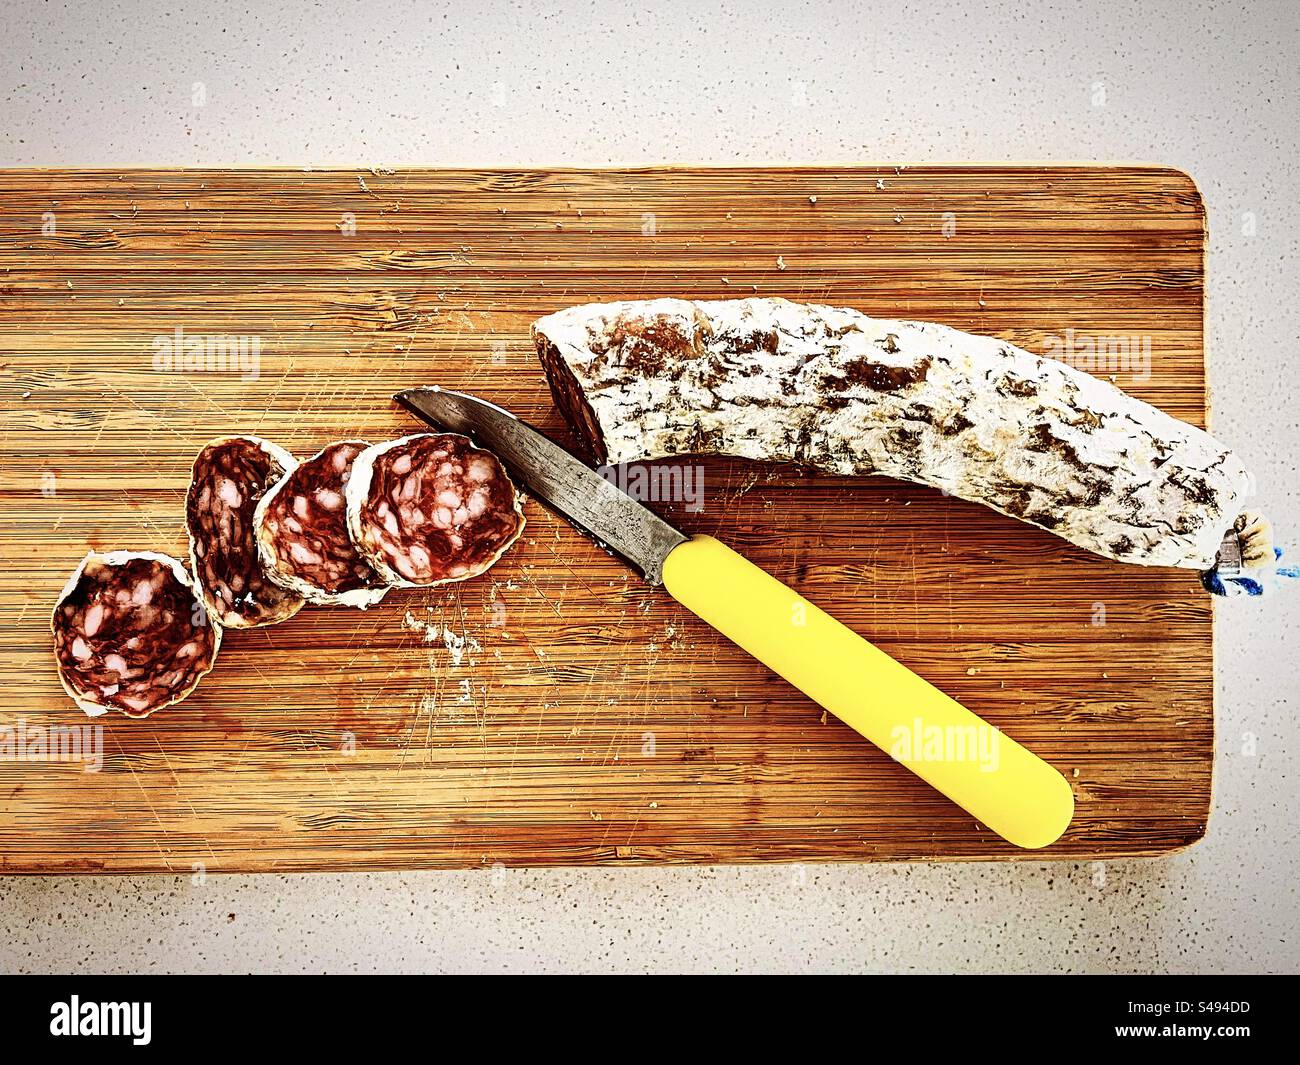 tranches de salami saucisse salée sèche saucisson de nourriture sur planche de bois avec un couteau jaune dans la cuisine prêt à être mangé manger Banque D'Images